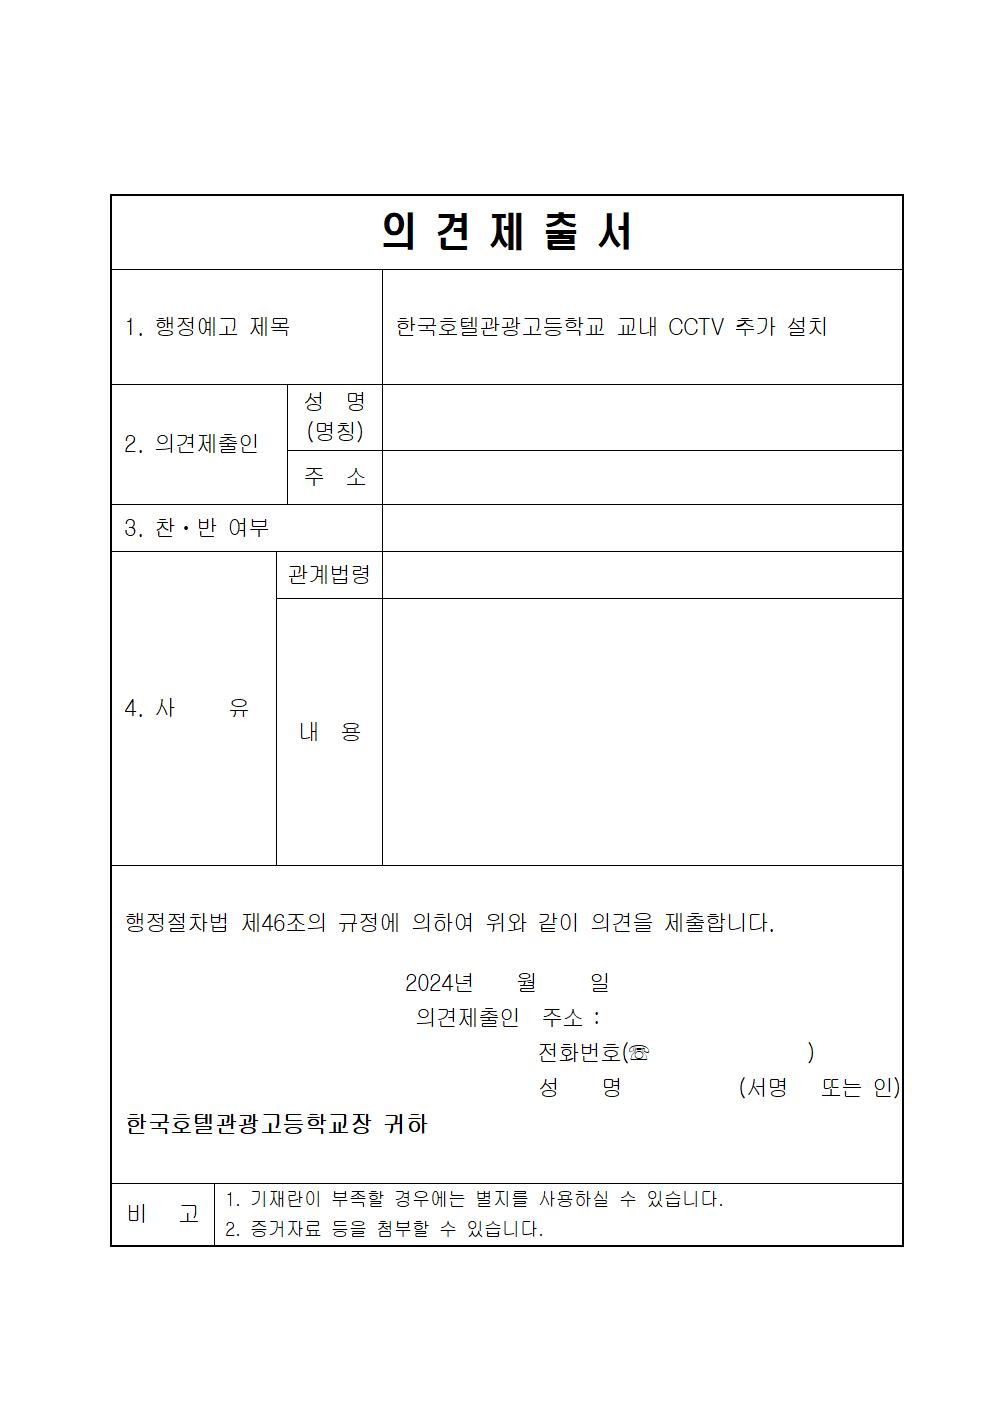 한국호텔관광고등학교 CCTV 추가 설치에 대한 행정예고문 및 의견제출서003